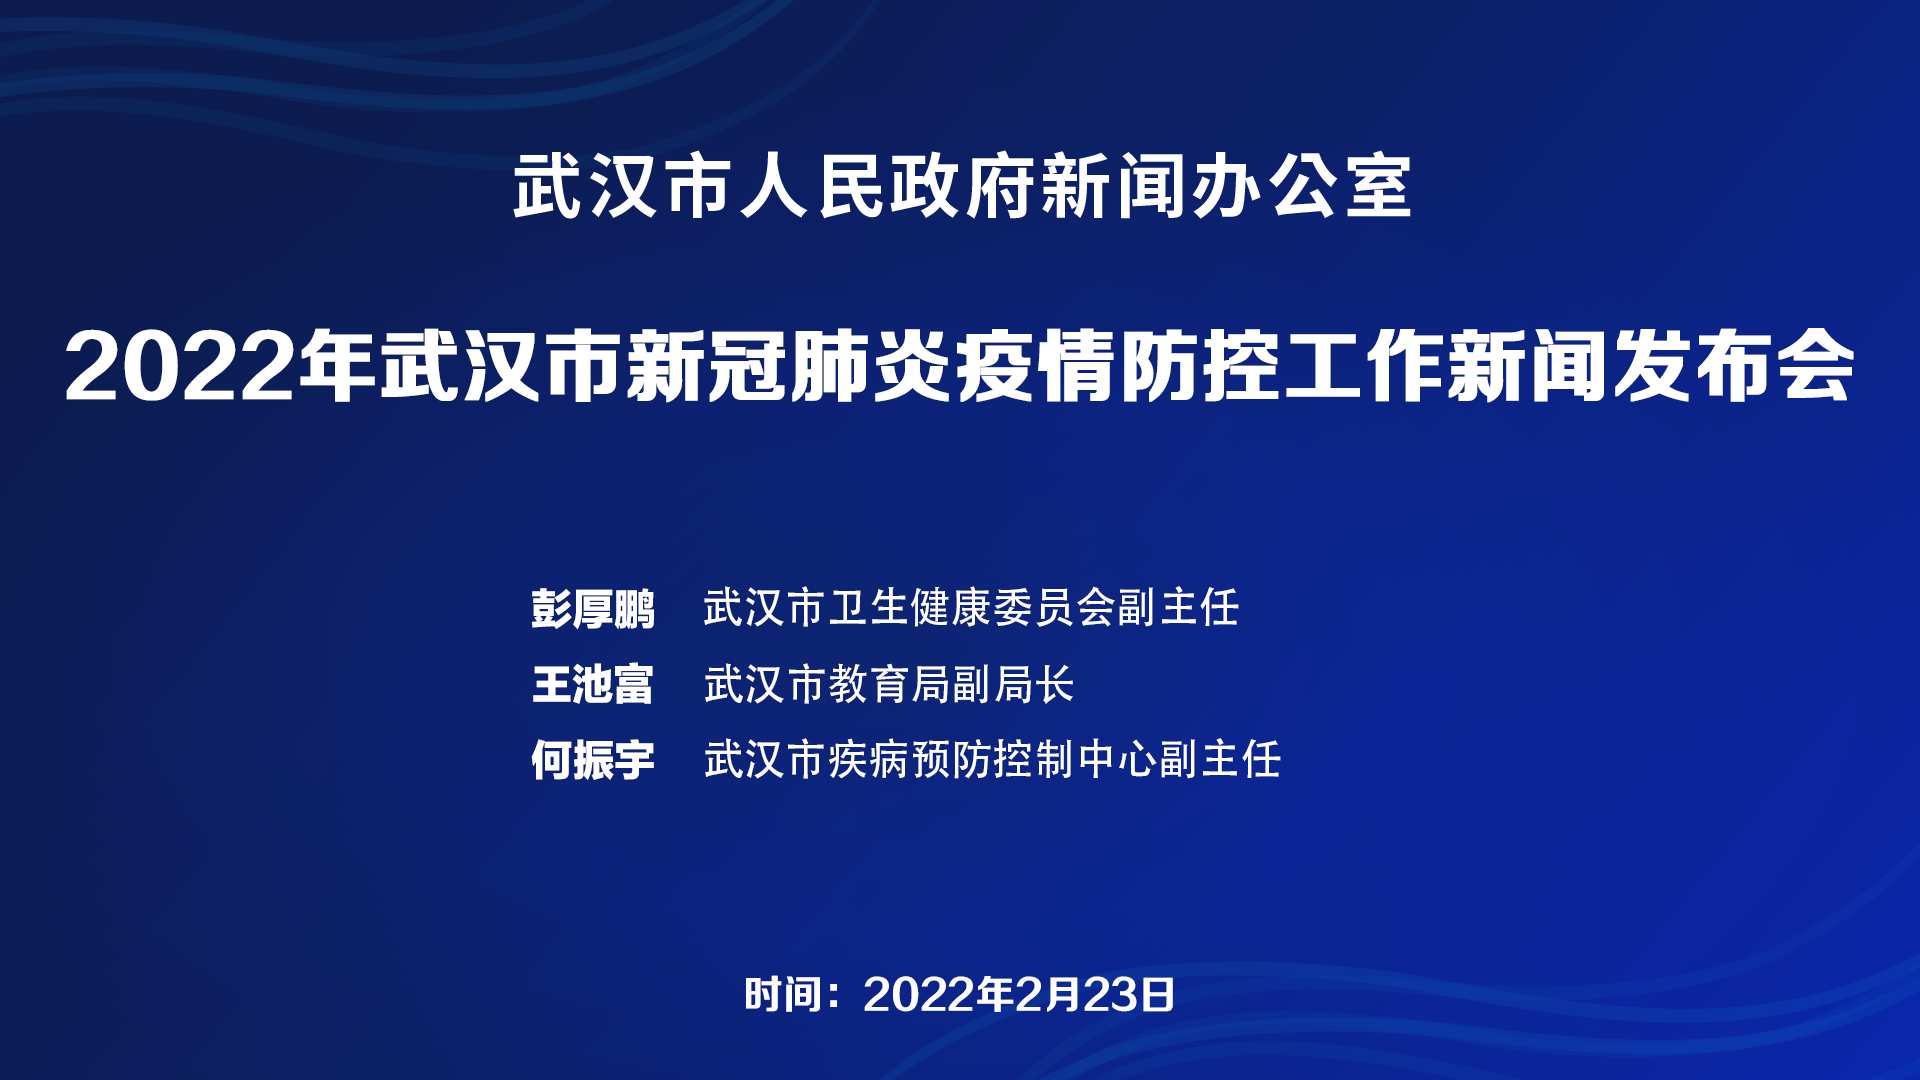 武汉市召开2022年新冠疫情防控工作新闻发布会